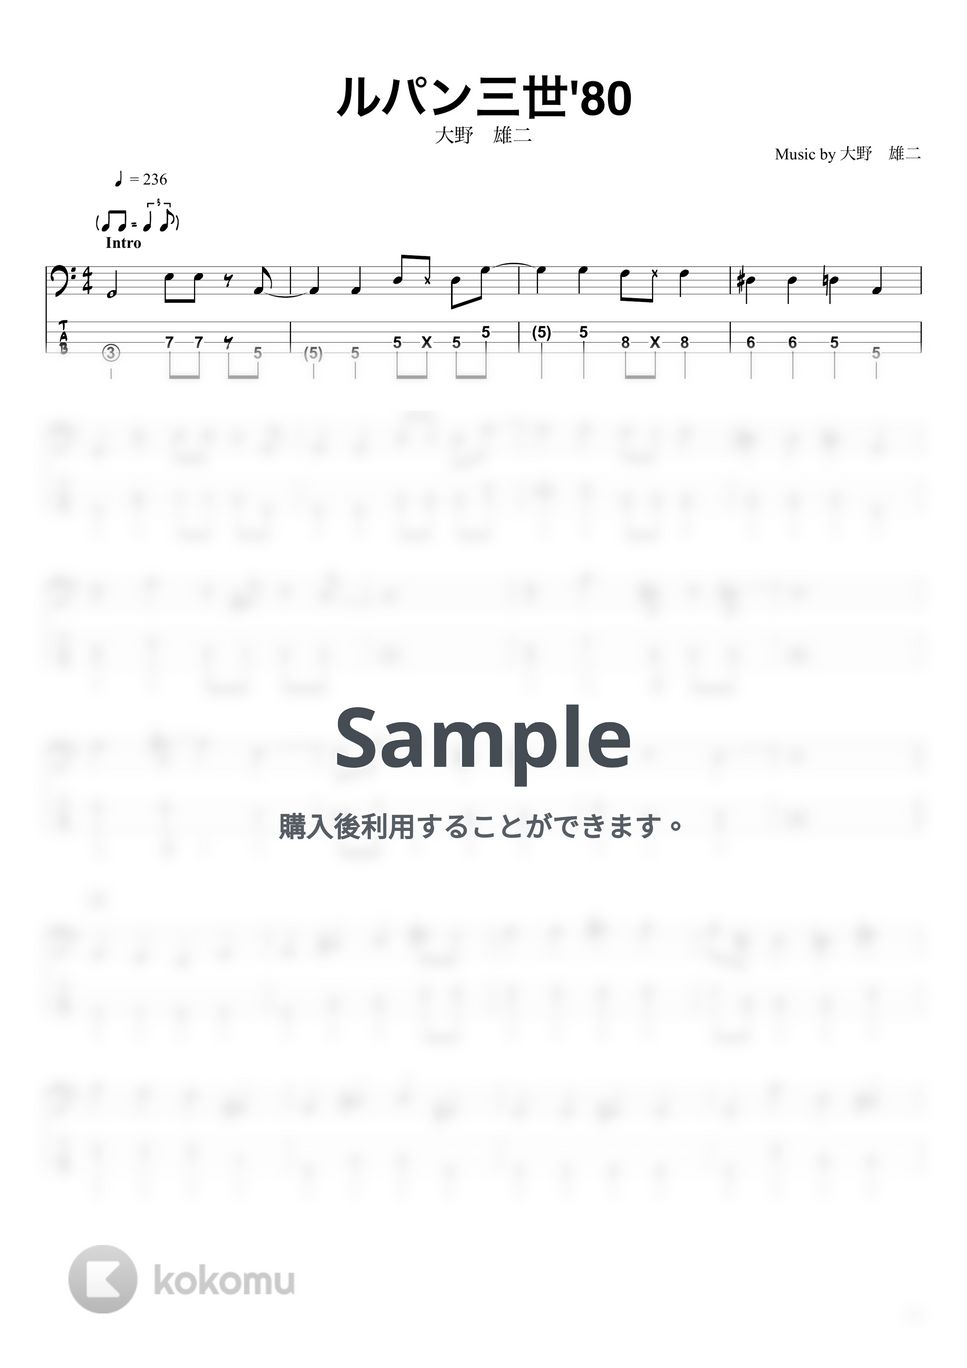 大野雄二 - ルパン三世 ’80 (ベースTAB譜☆4弦ベース対応) by swbass